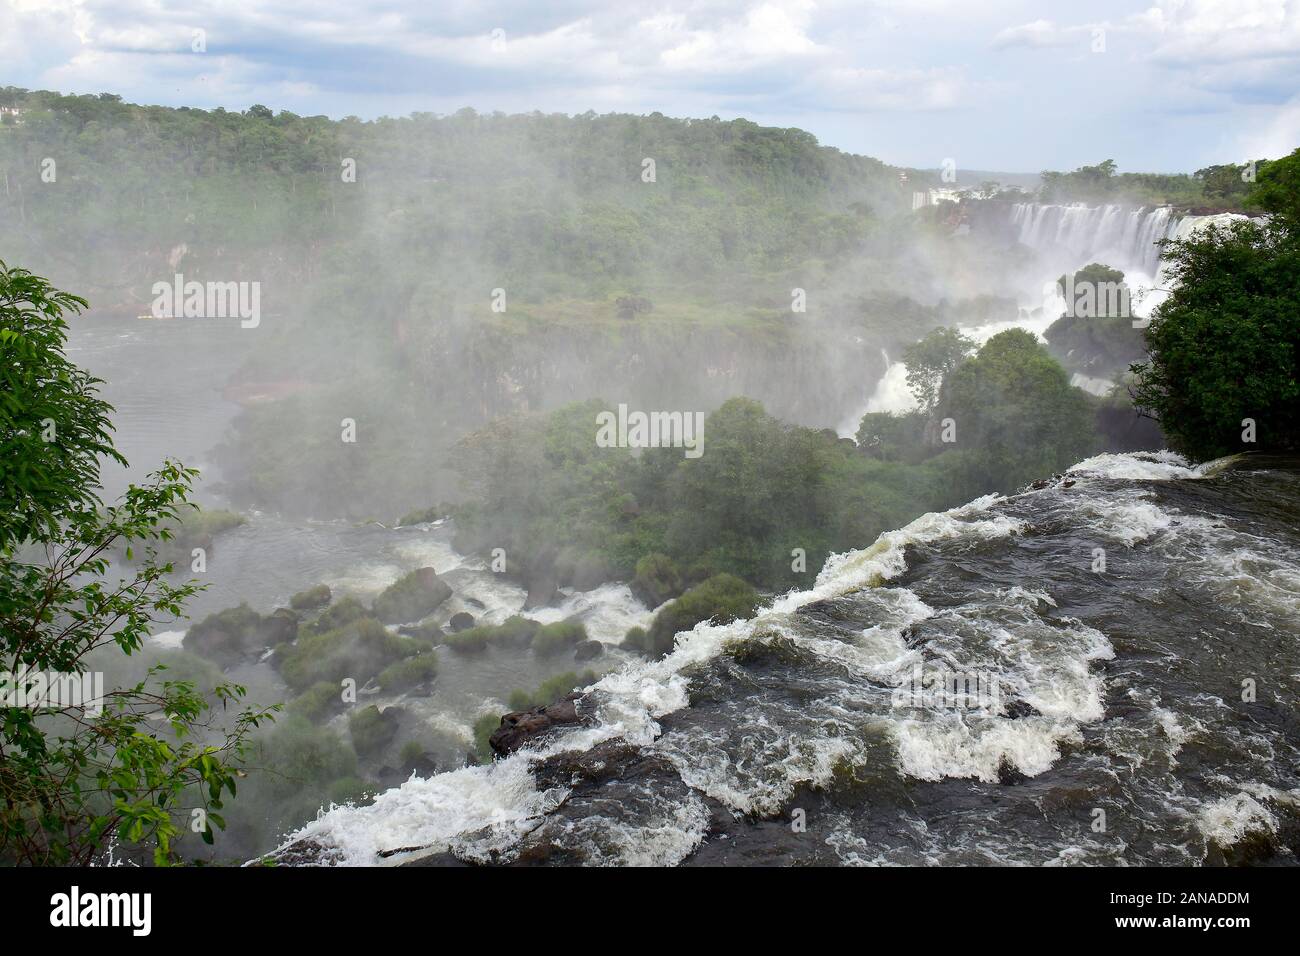 Iguazu Falls, Cataratas del Iguazú, Iguazu National Park, Misiones Province, Argentina, South America Stock Photo